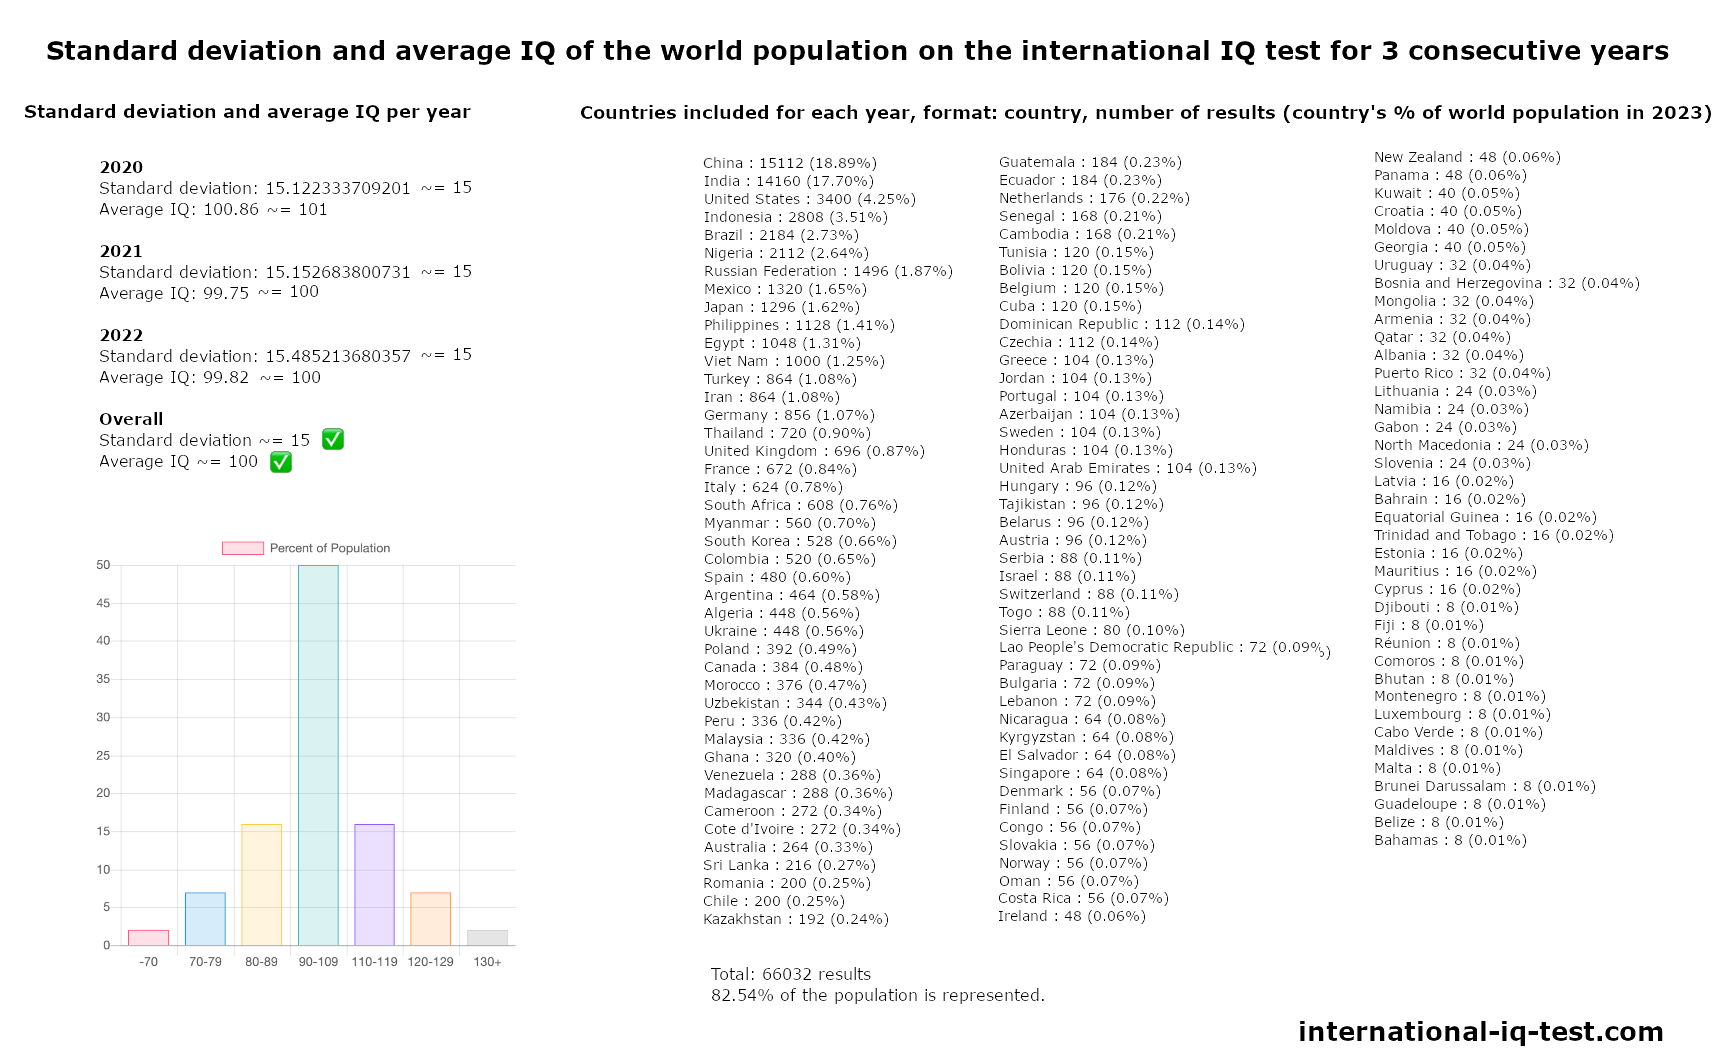 2020年、2021年和2022年国际智商测试中世界人口的标准偏差和平均智商